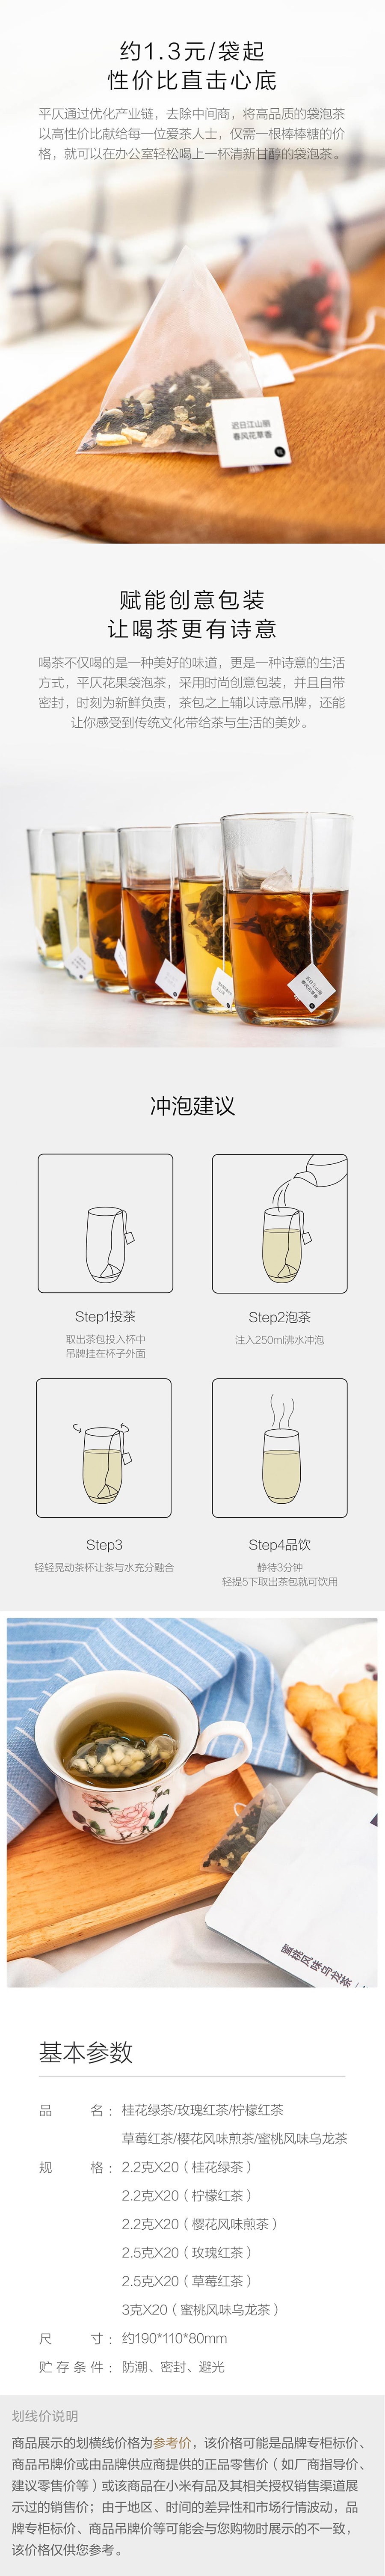 【中国直邮】小米有品蜜桃风味乌龙茶(调味茶)3g*20